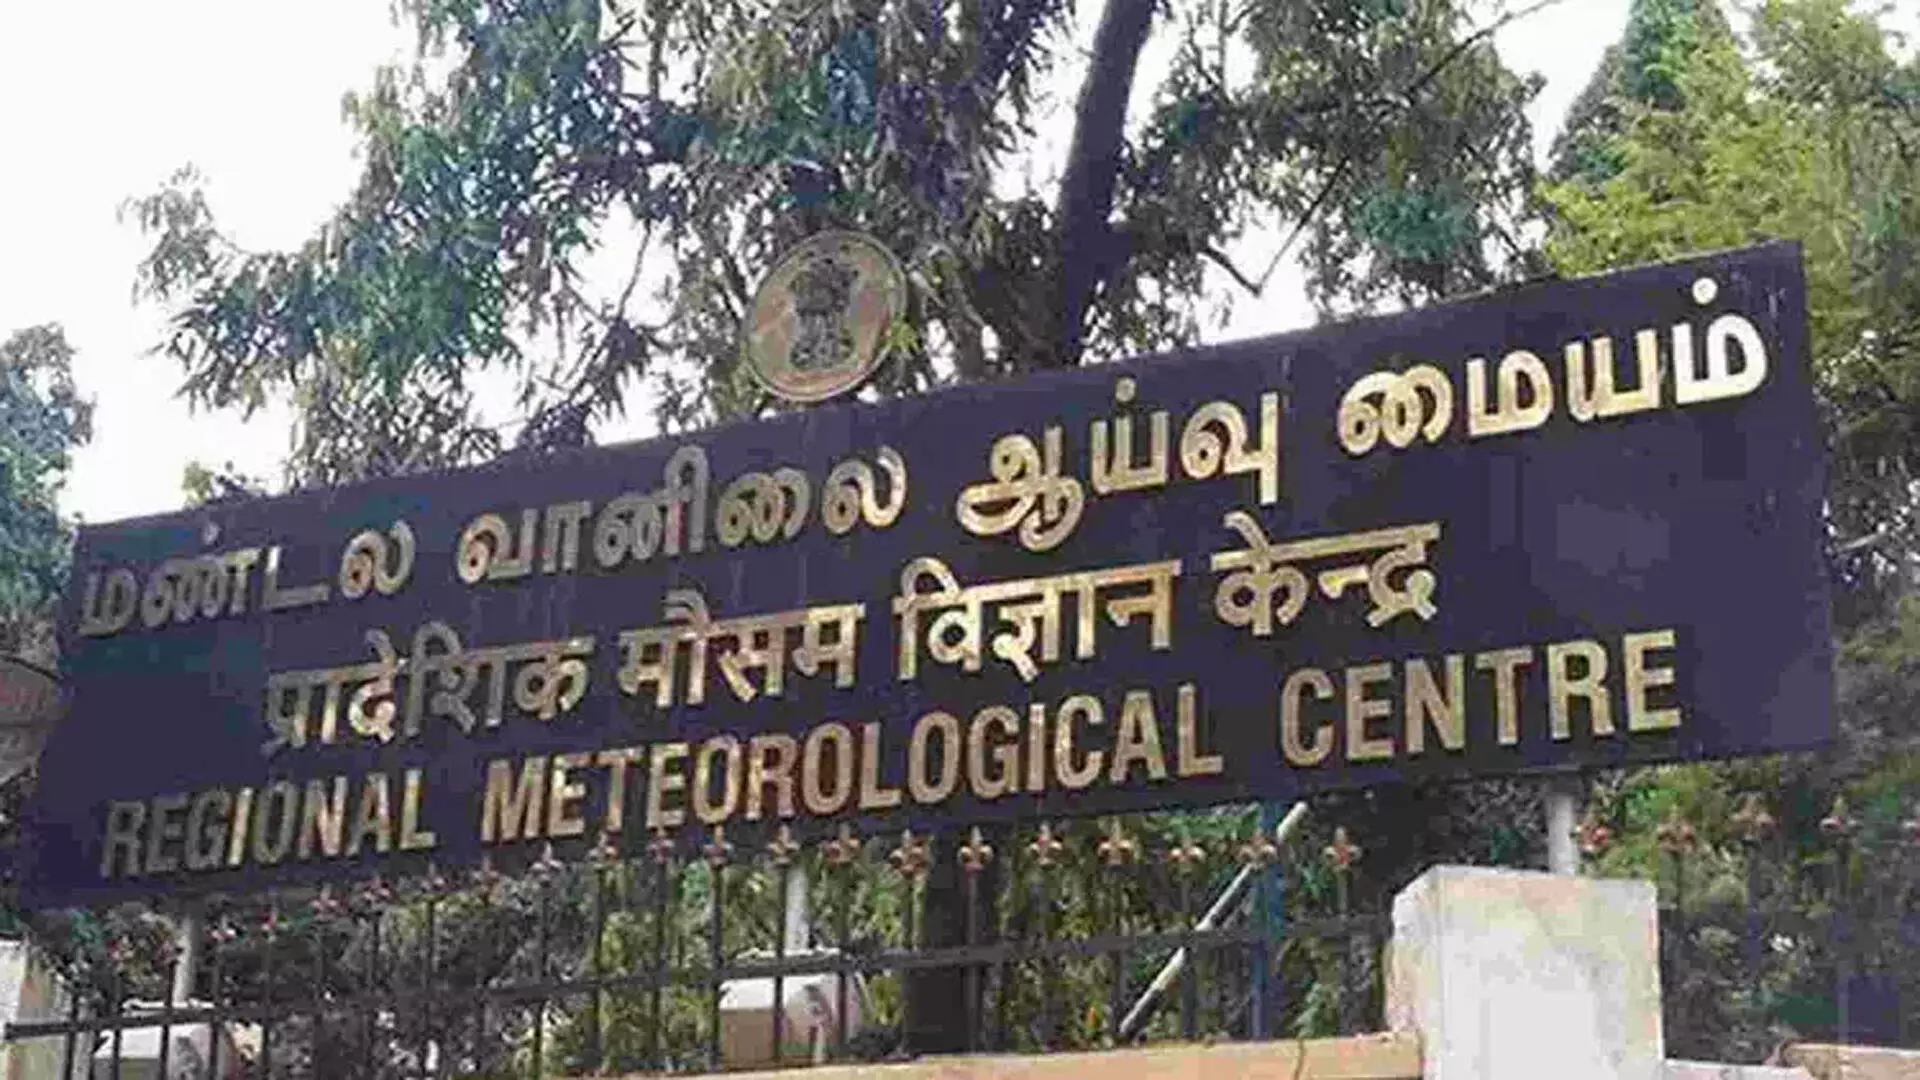 CHENNAI: अगले दो घंटों में तमिलनाडु के 9 जिलों में मध्यम बारिश की संभावना- RMC